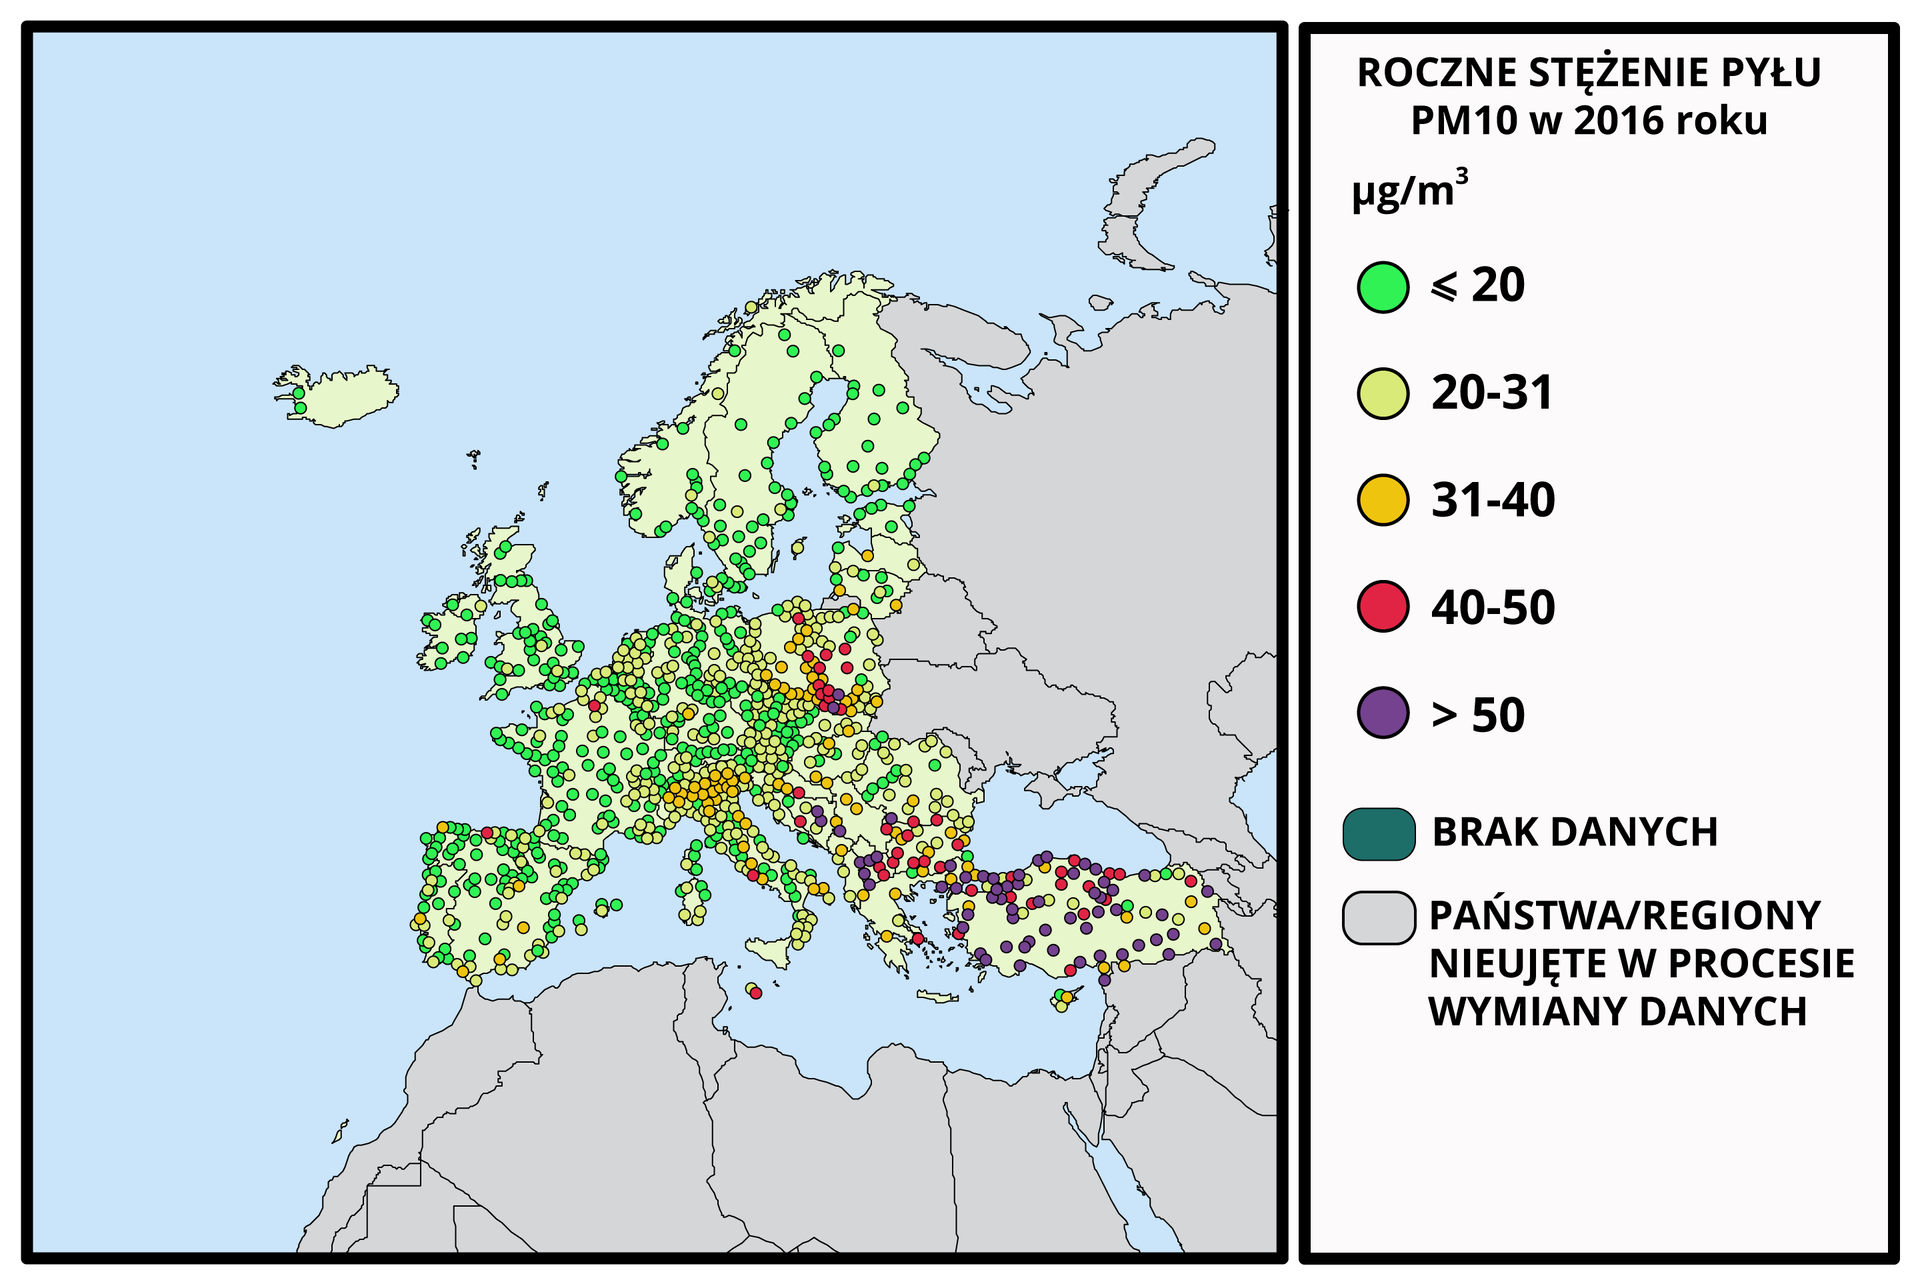 Mapa Europy przedstawia za pomocą kolorowych kropek średnie roczne stężenie pyłu PM10 w krajach Unii Europejskiej w 2016 roku podane w mikrogramach na metr sześcienny. Stężenie w przedziale między 40 a 50 mikrogramów na metr sześciennych jest głównie na terenie Polski centralnej i południowej - Śląsk, Małopolska, następnie w jednym miejscu na północy Hiszpanii, w jednym miejscu na północy Francji, w Rzymie, na Malcie, w Turcji, Grecji, Bułgarii, Rumunii i Macedonii. Stężenie powyżej 50 mikrogramów na metr sześciennych zaznaczono między innymi na południu Polski, w różnych miejscach na całym obszarze Turcji, na obszarze Bośni i Hercegowiny oraz Macedonii. Niskie roczne stężenie pyłu PM10, czyli poniżej 20 mikrogramów na metr sześcienny, odnotowano między innymi w całej Skandynawii, w Wielkiej Brytanii i Irlandii, w Hiszpanii, Francji, w Niemczech. 